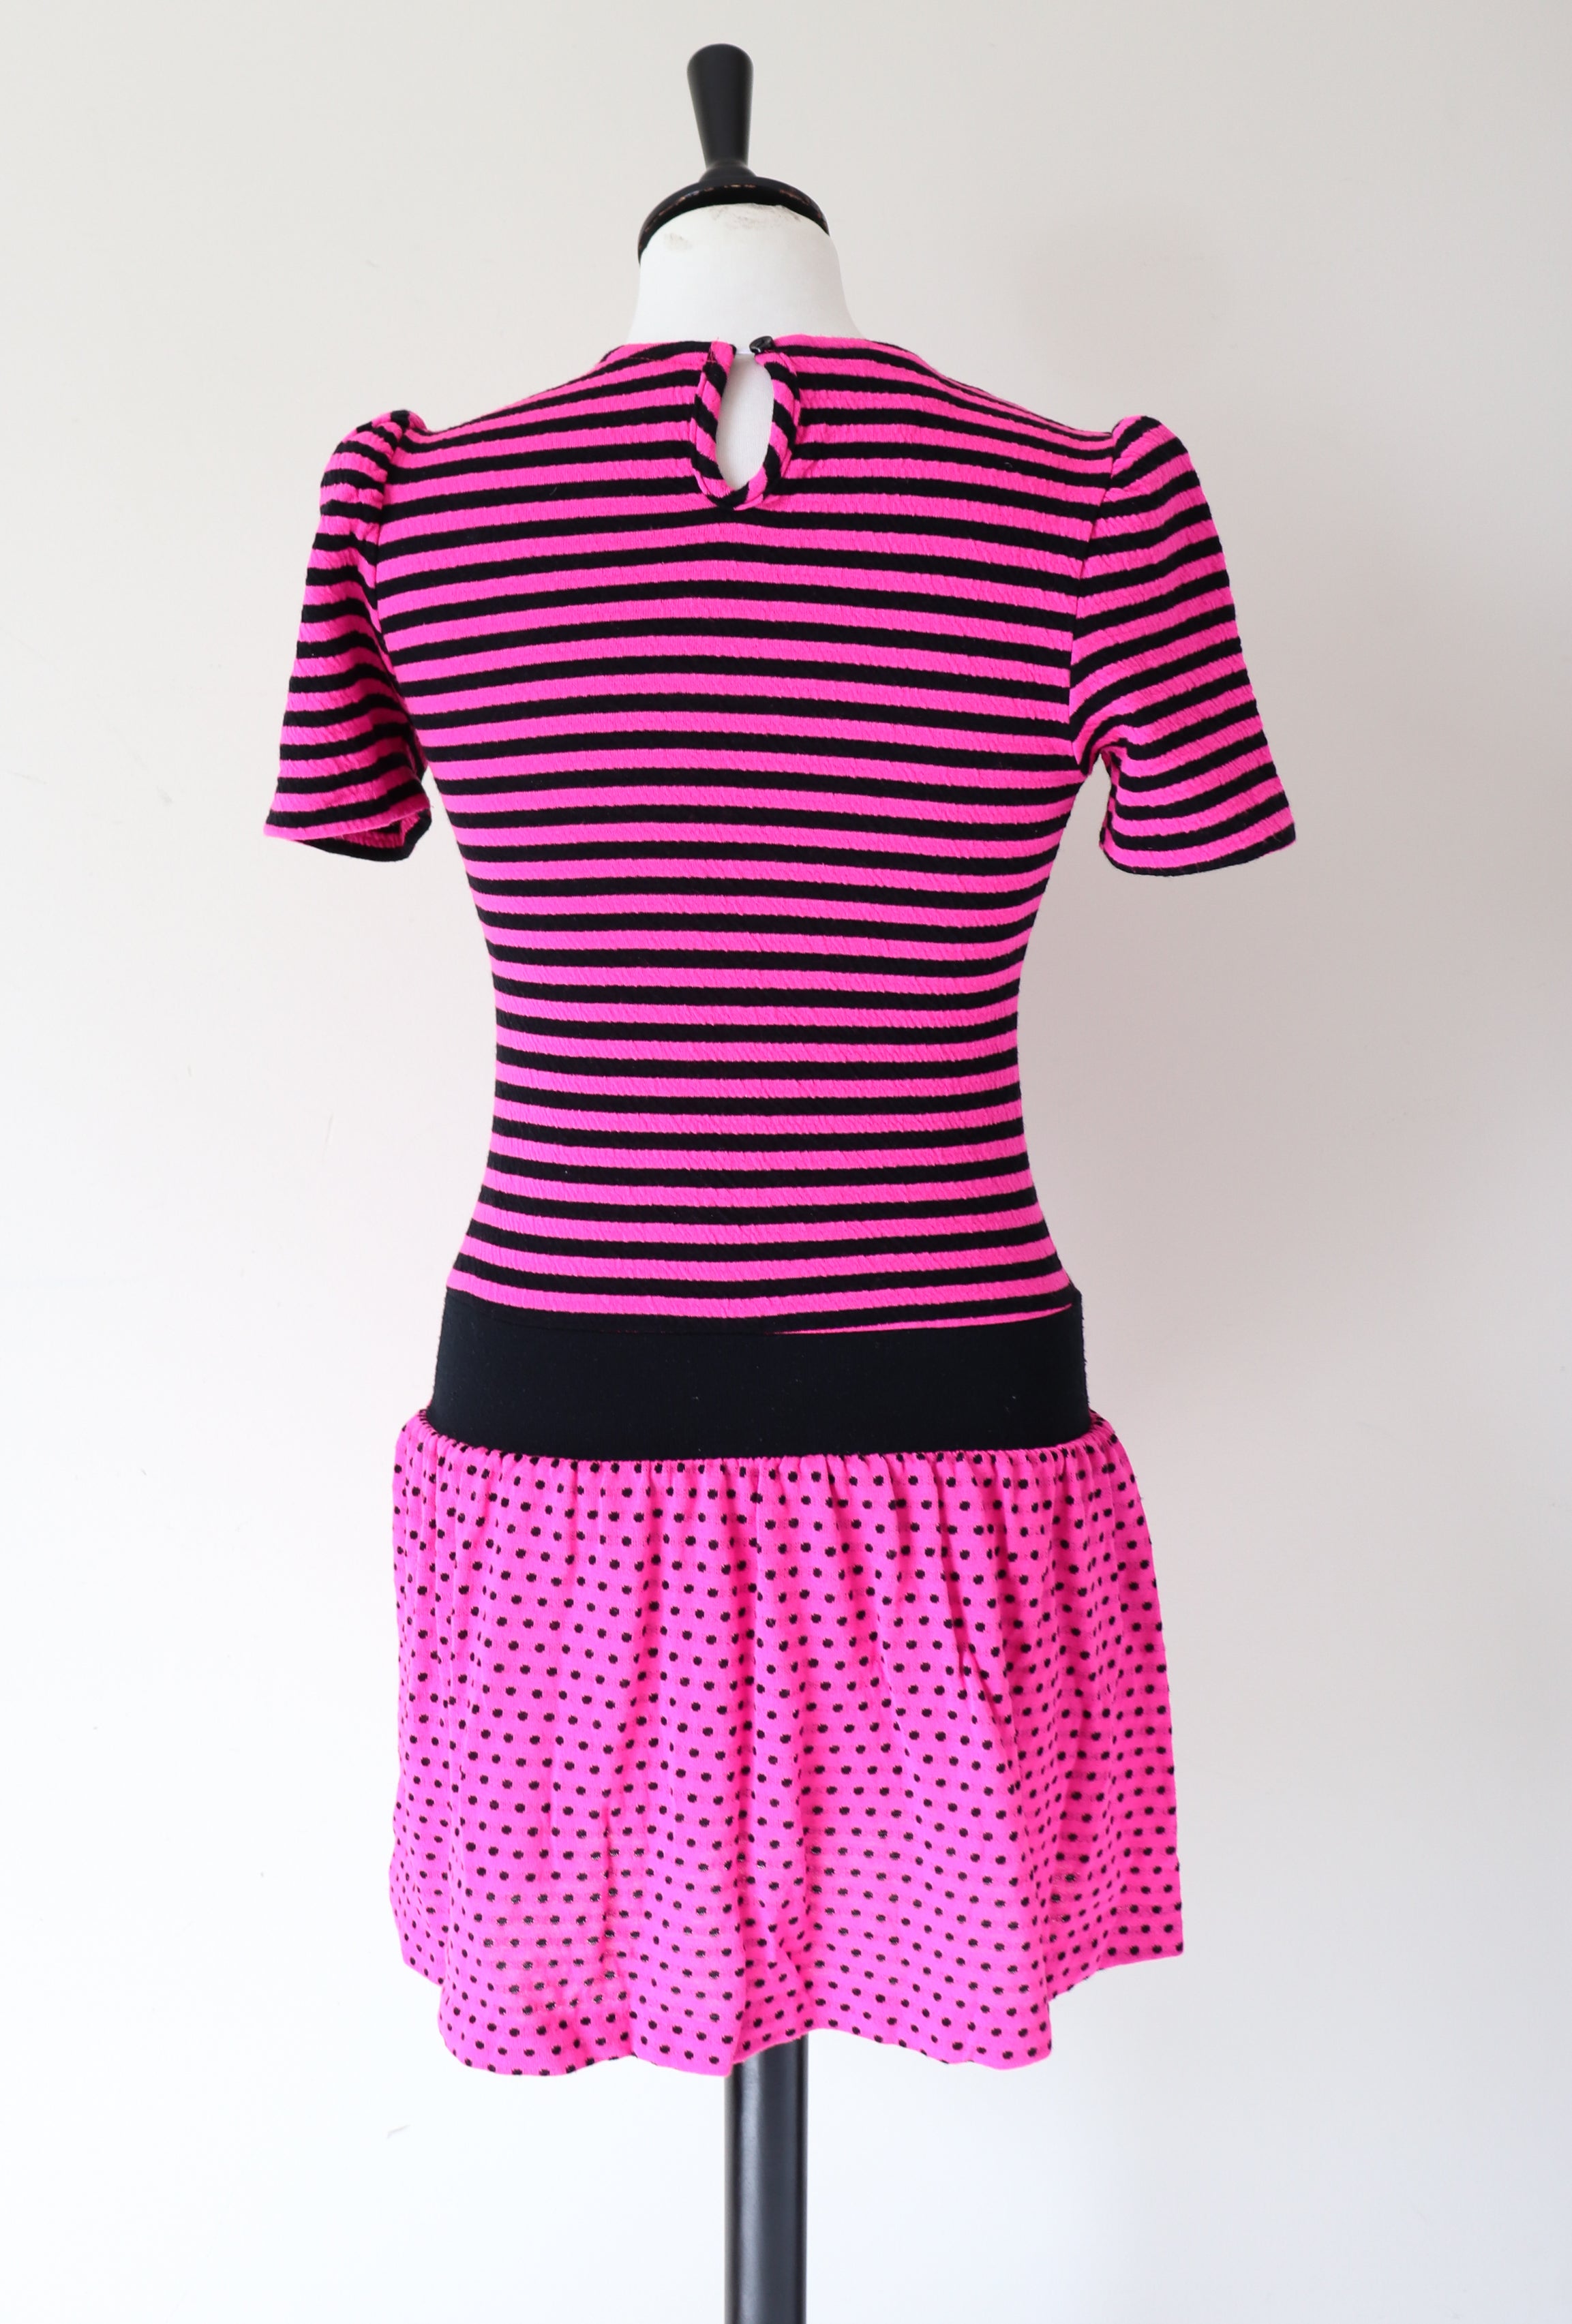 Vintage 1980s Mini Dress - DVF - Pink - 1980s  Rah Rah - XXS / UK 6